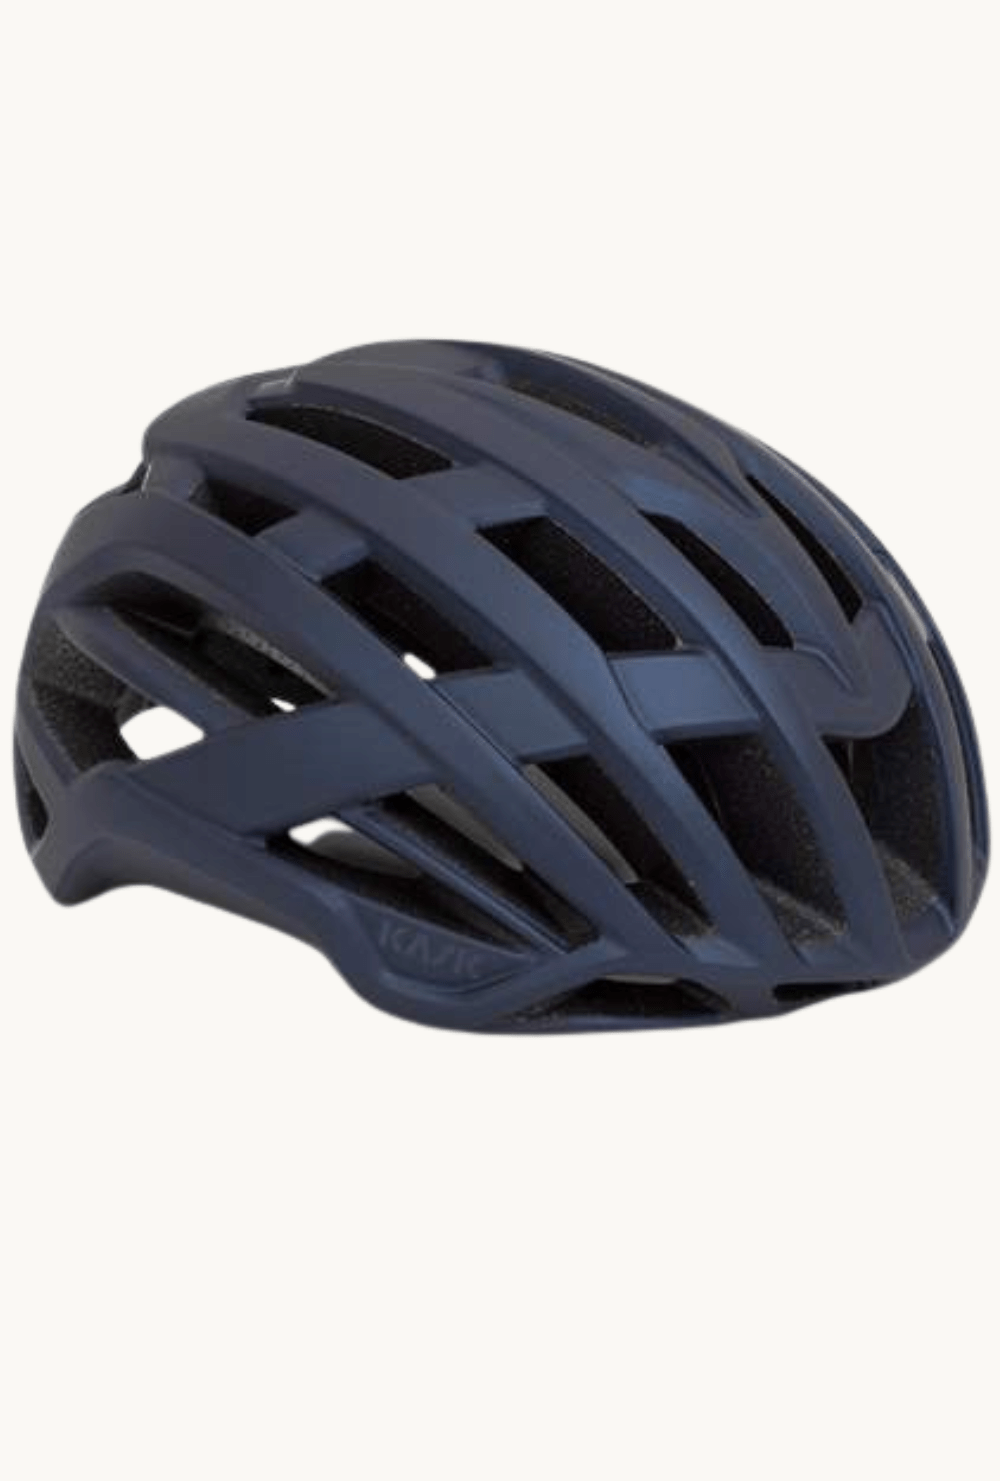 Helmet - Kask Valegro Matt Dark Bluemedium / Matt Dark Blue